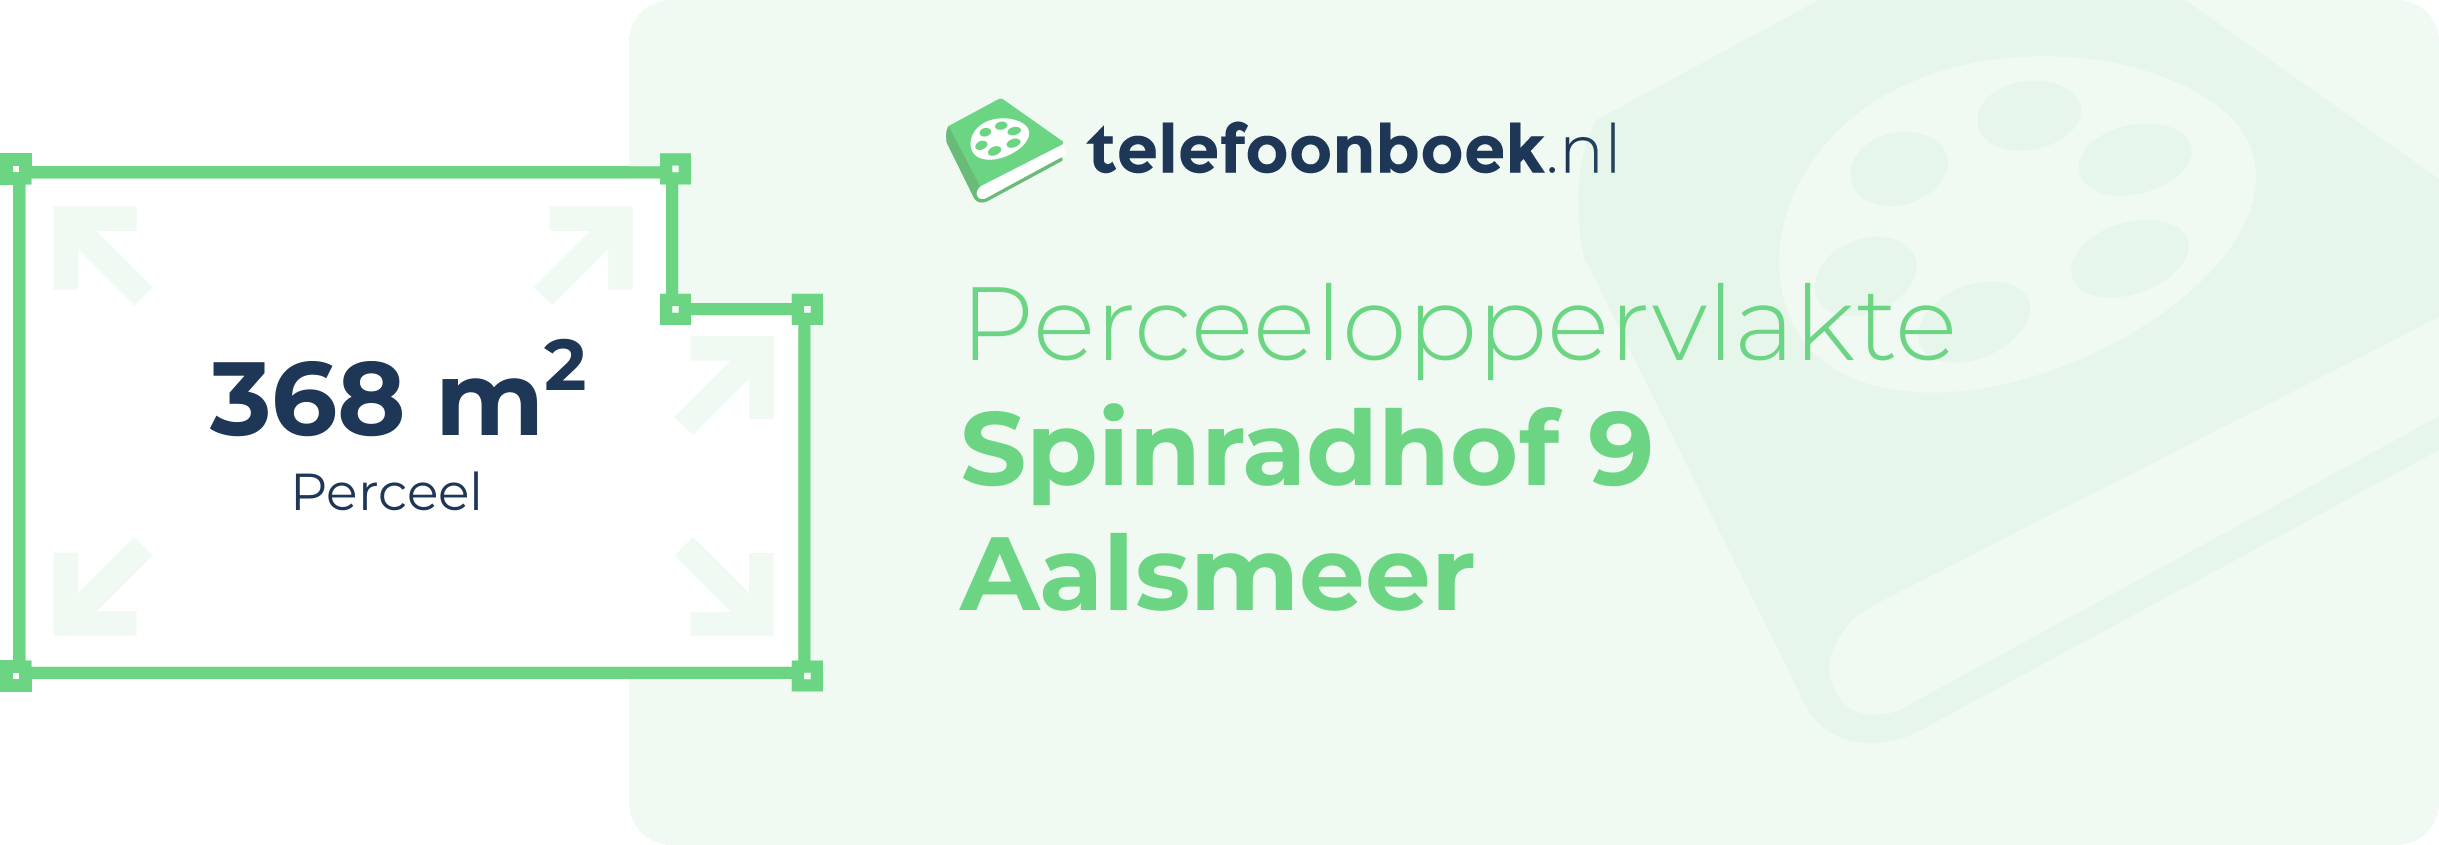 Perceeloppervlakte Spinradhof 9 Aalsmeer